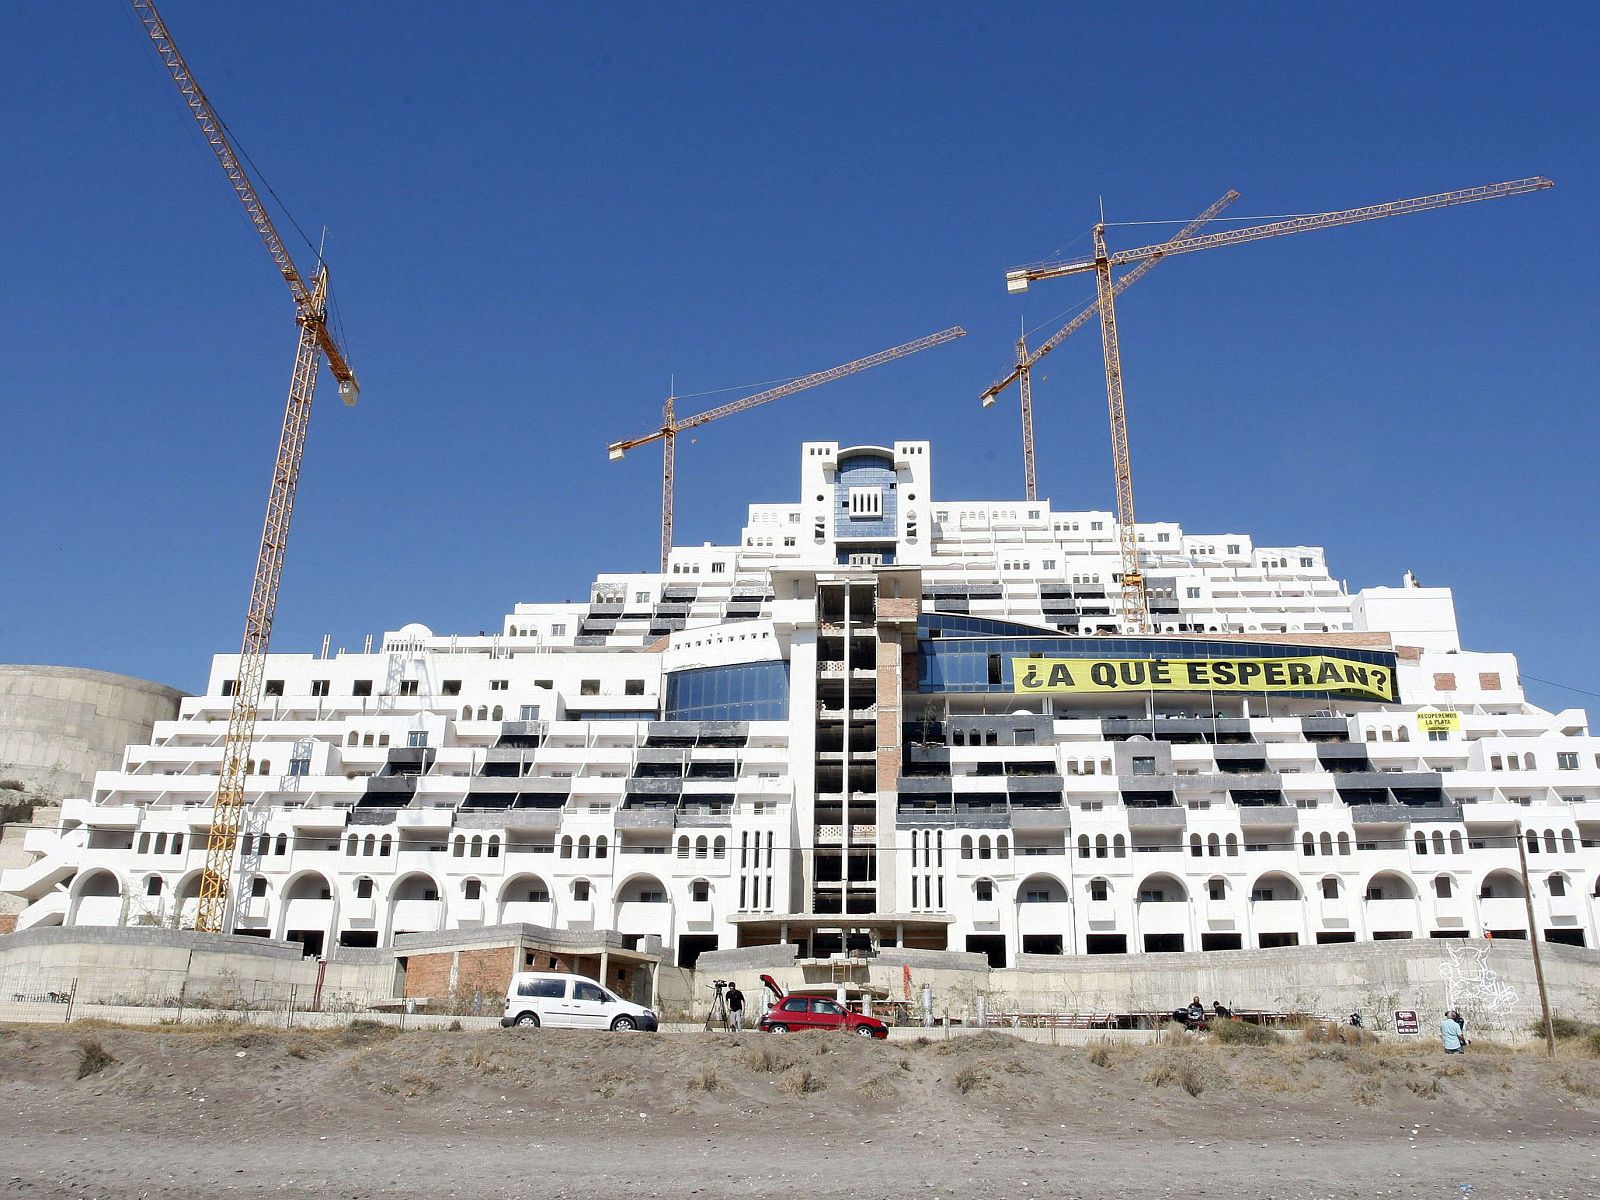 Fotografía de archivo del hotel construido en la playa de El Algarrobico, en Almería